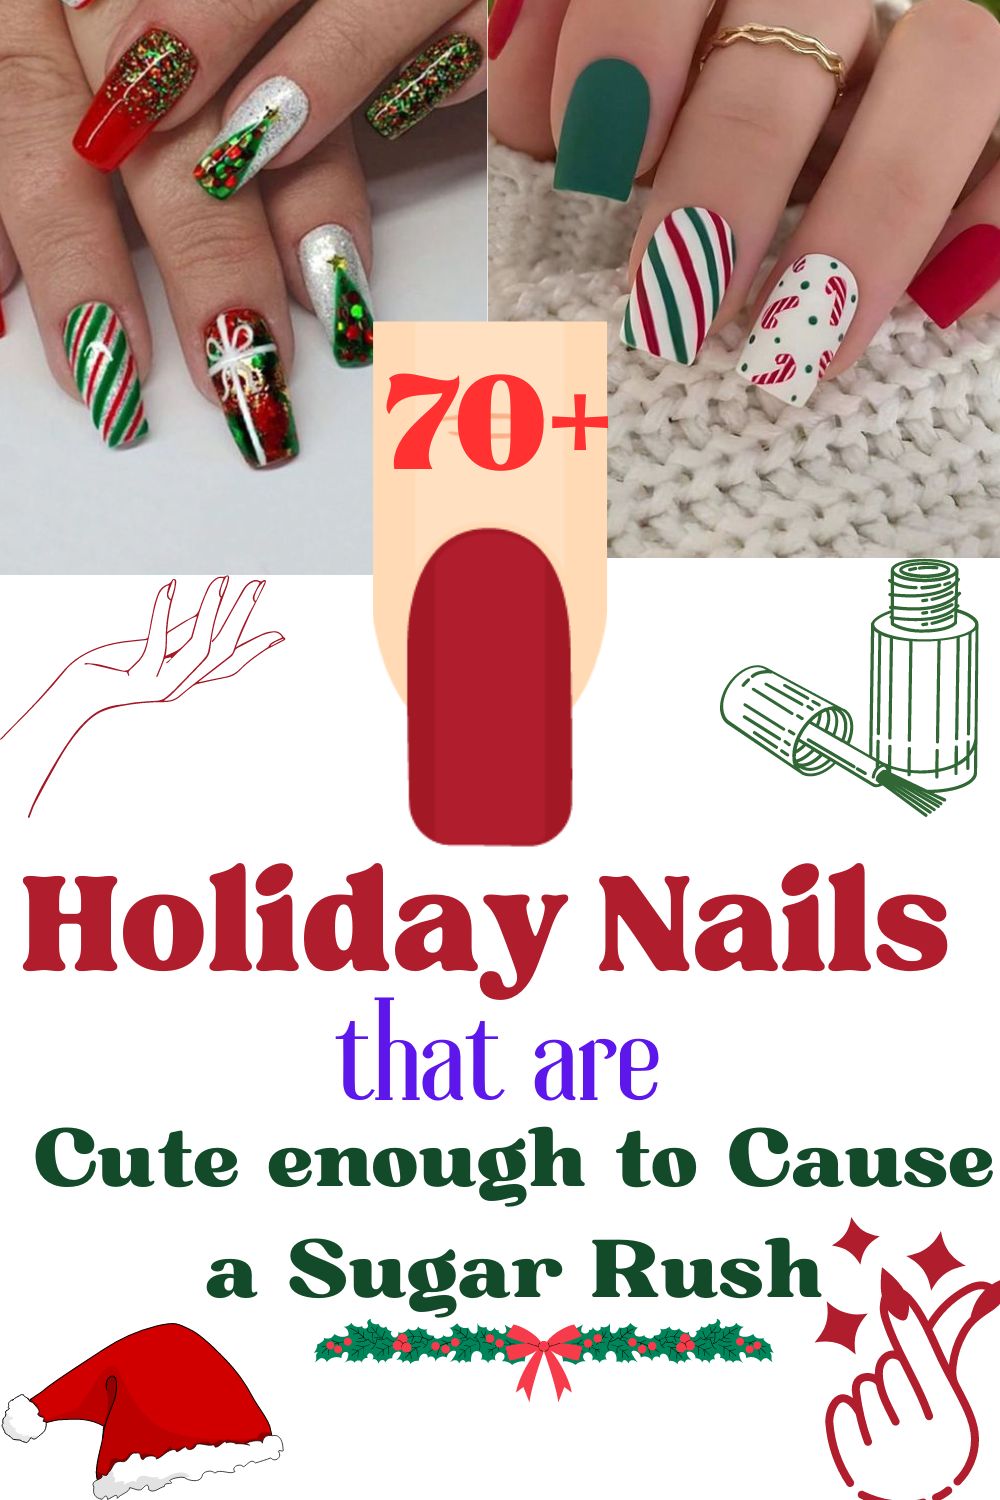 70 Cool Nail Designs